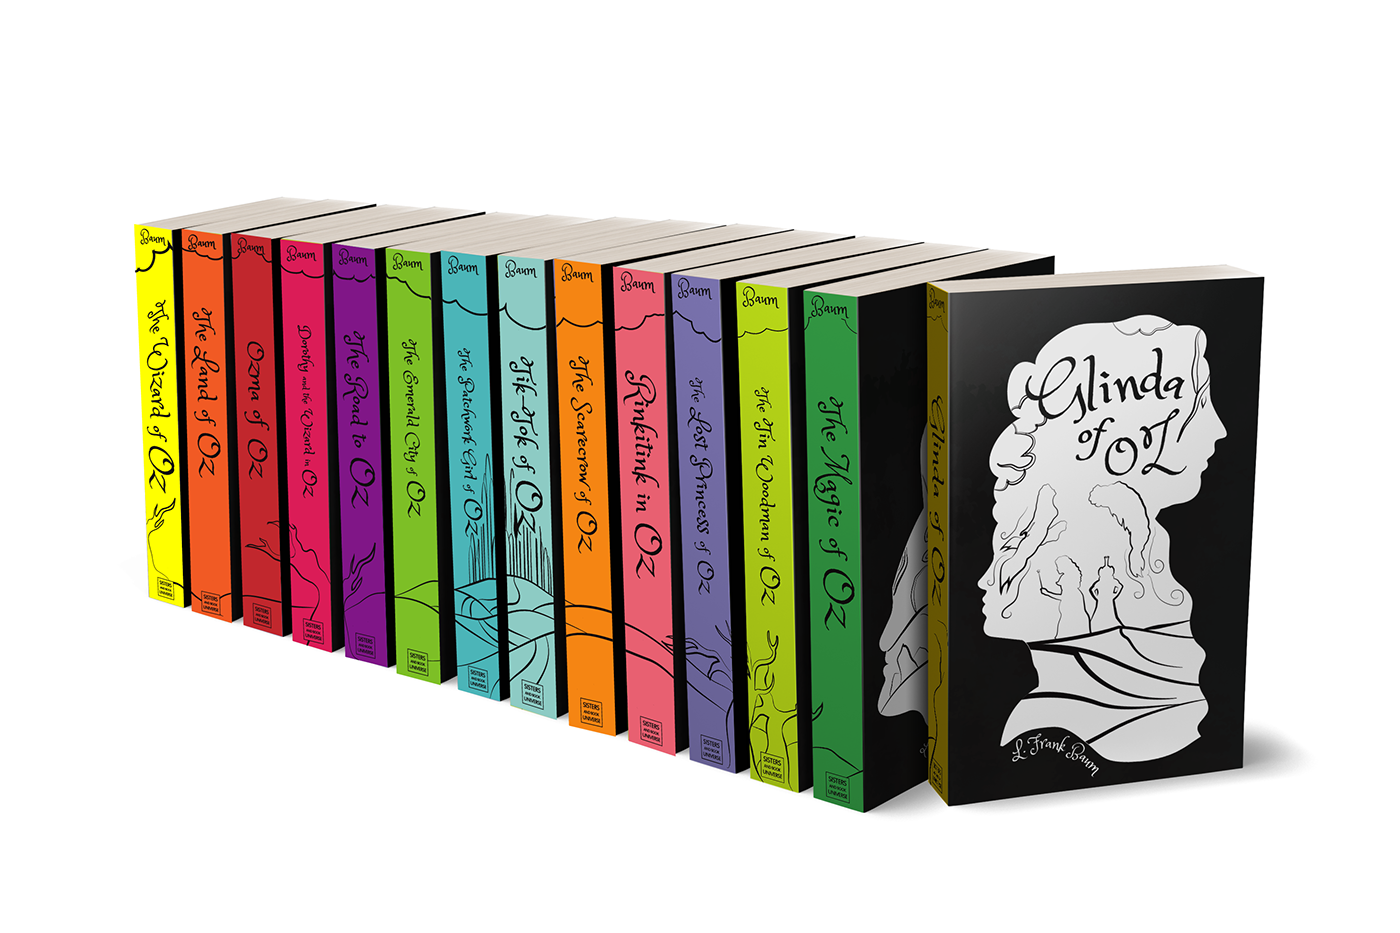 wizardofoz bookcover books redesign